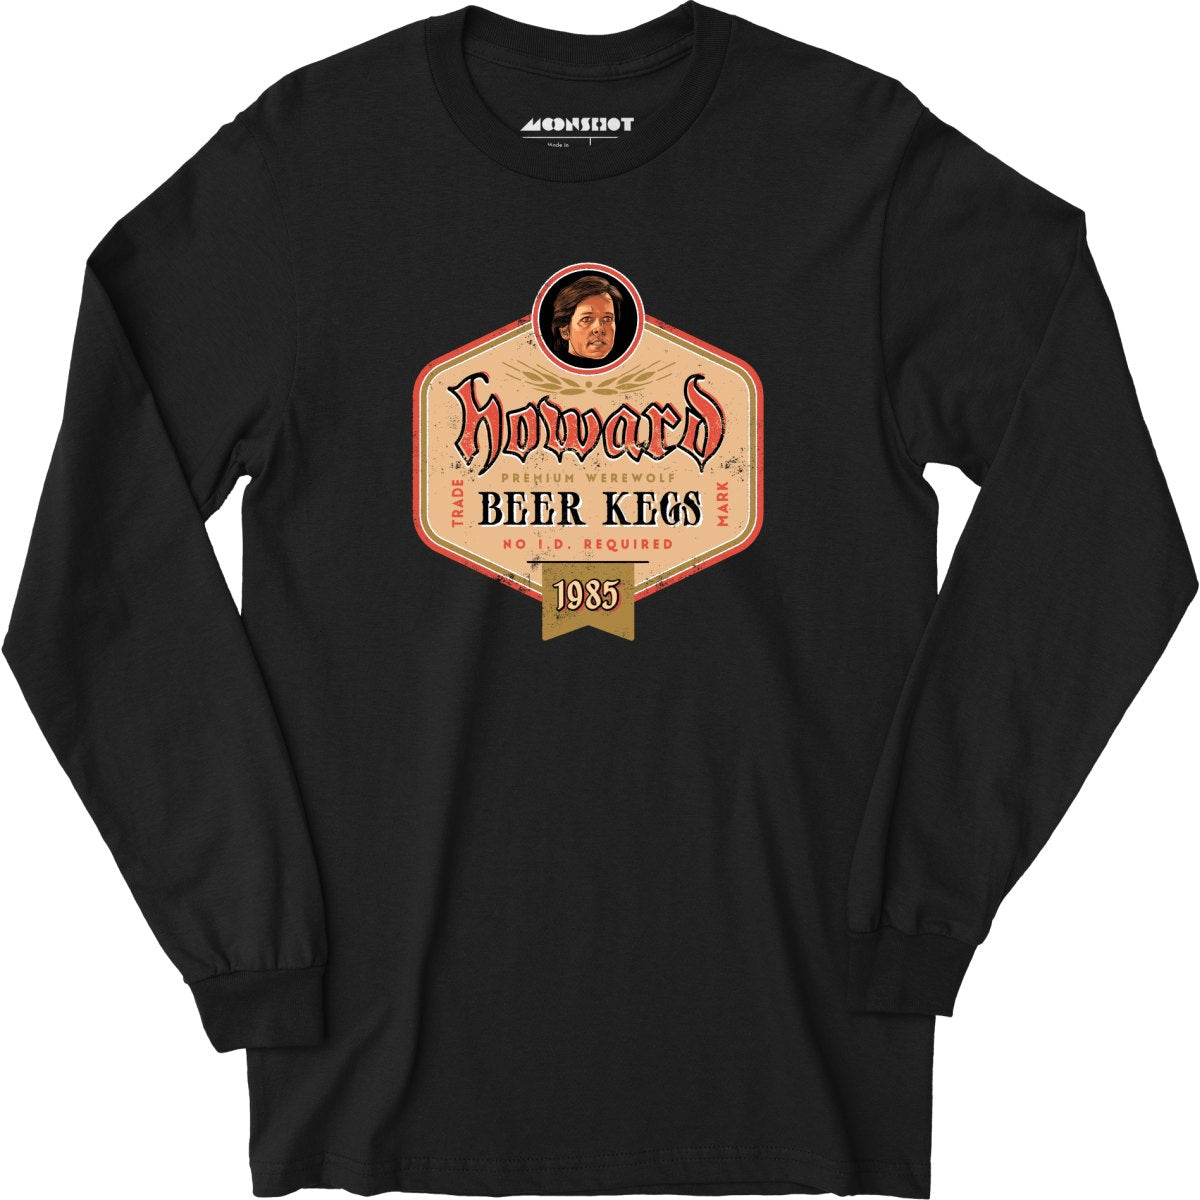 Howard Premium Werewolf Beer Kegs - Long Sleeve T-Shirt